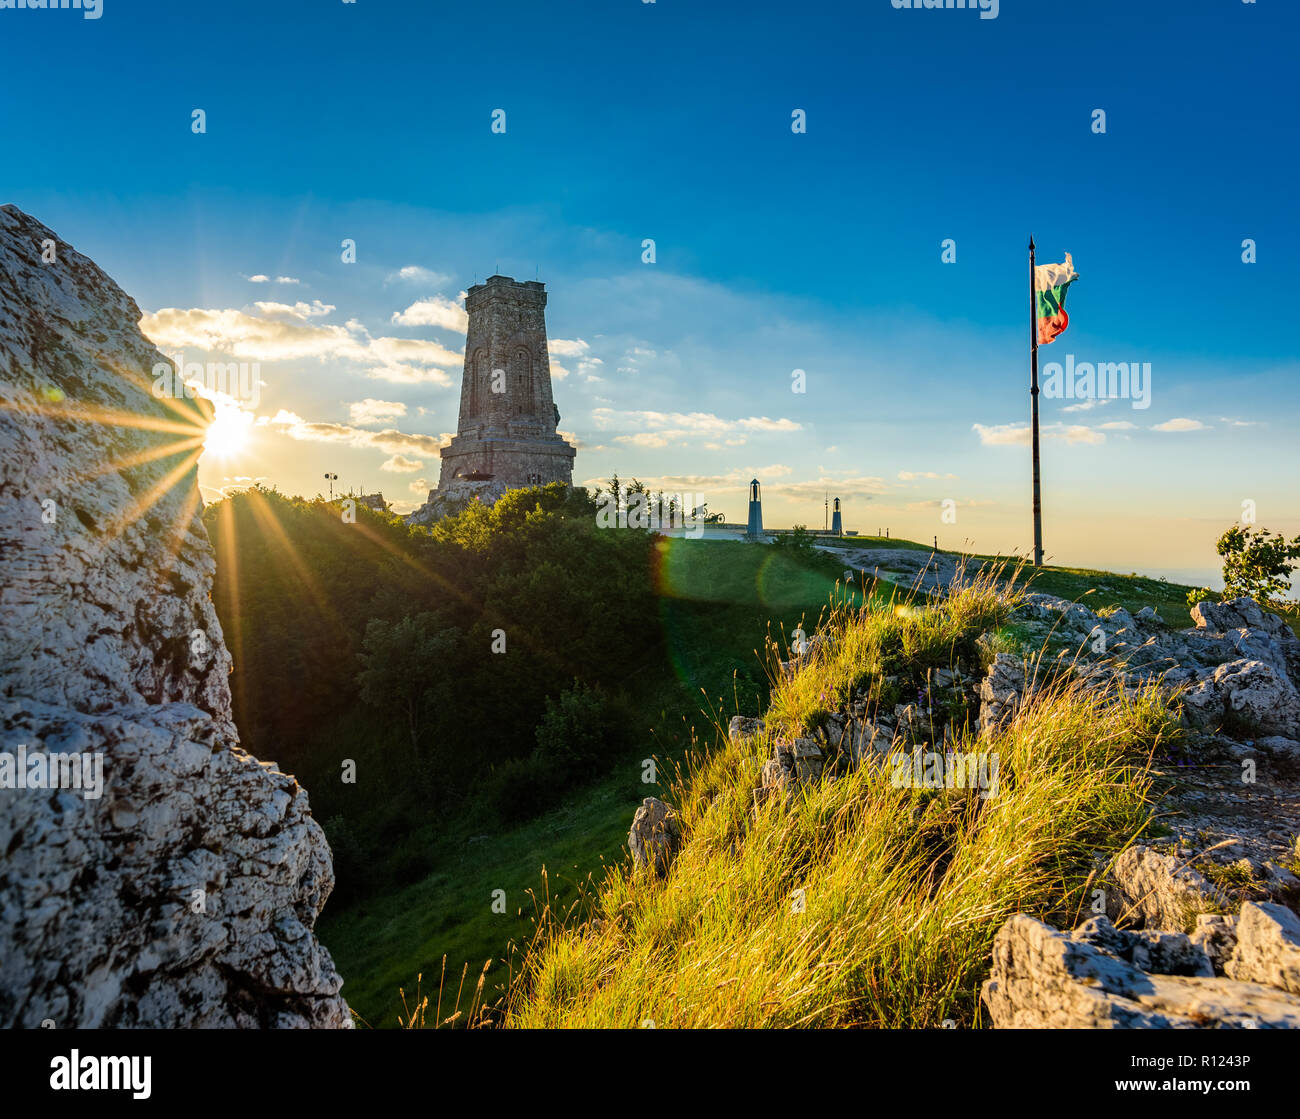 Shipka, Bulgarien - Denkmal zur Erinnerung an die Opfer der Russen und Bulgaren im Russisch-türkischen Krieg Stockfoto